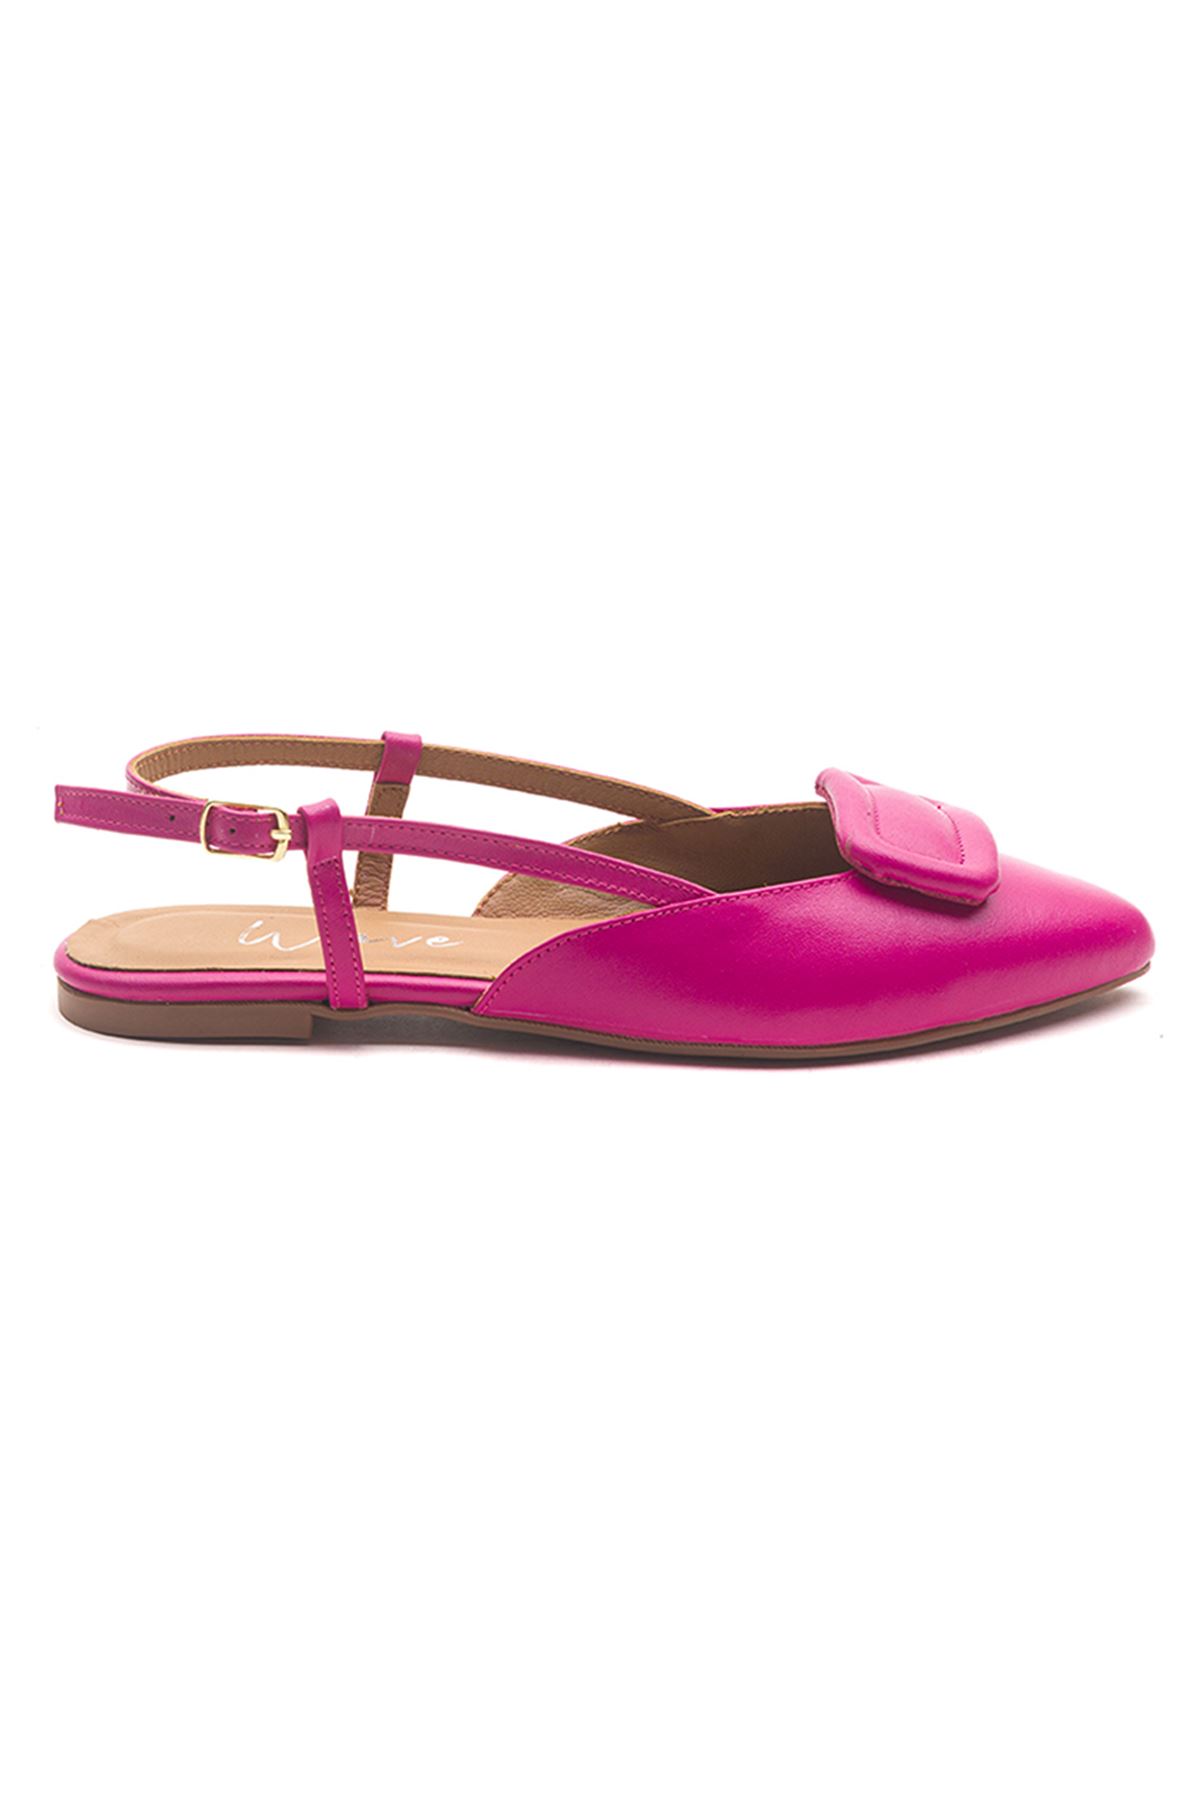 Wave Shoes Hakiki Deri Babet Bilekten Tokalı Ayakkabı Pembe Renk Yazlık Kadın Sandalet 23203 